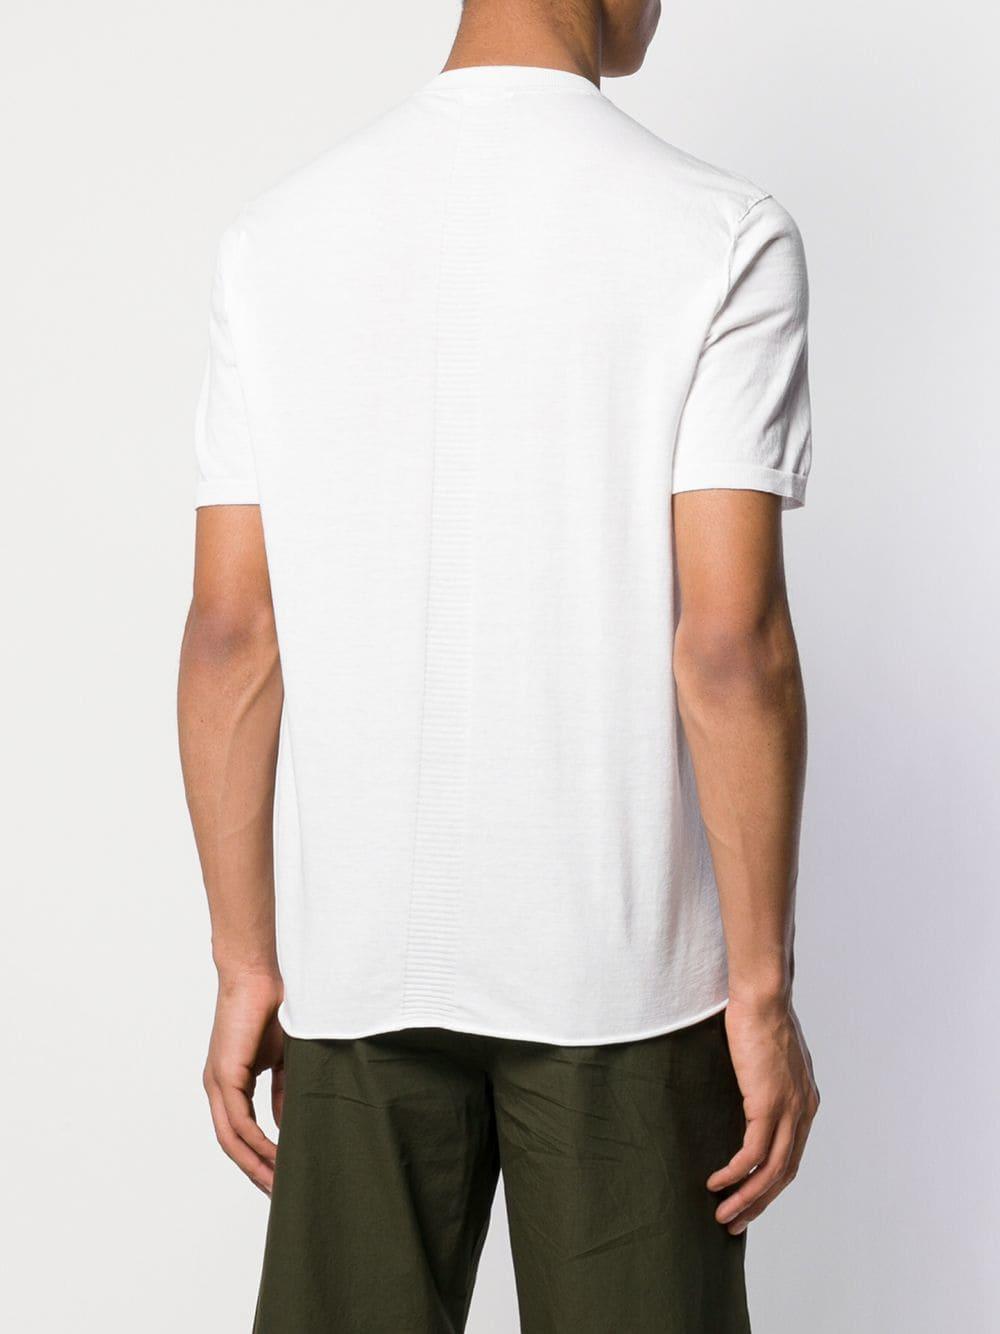 Transit Button Neckline T-shirt in White for Men - Lyst